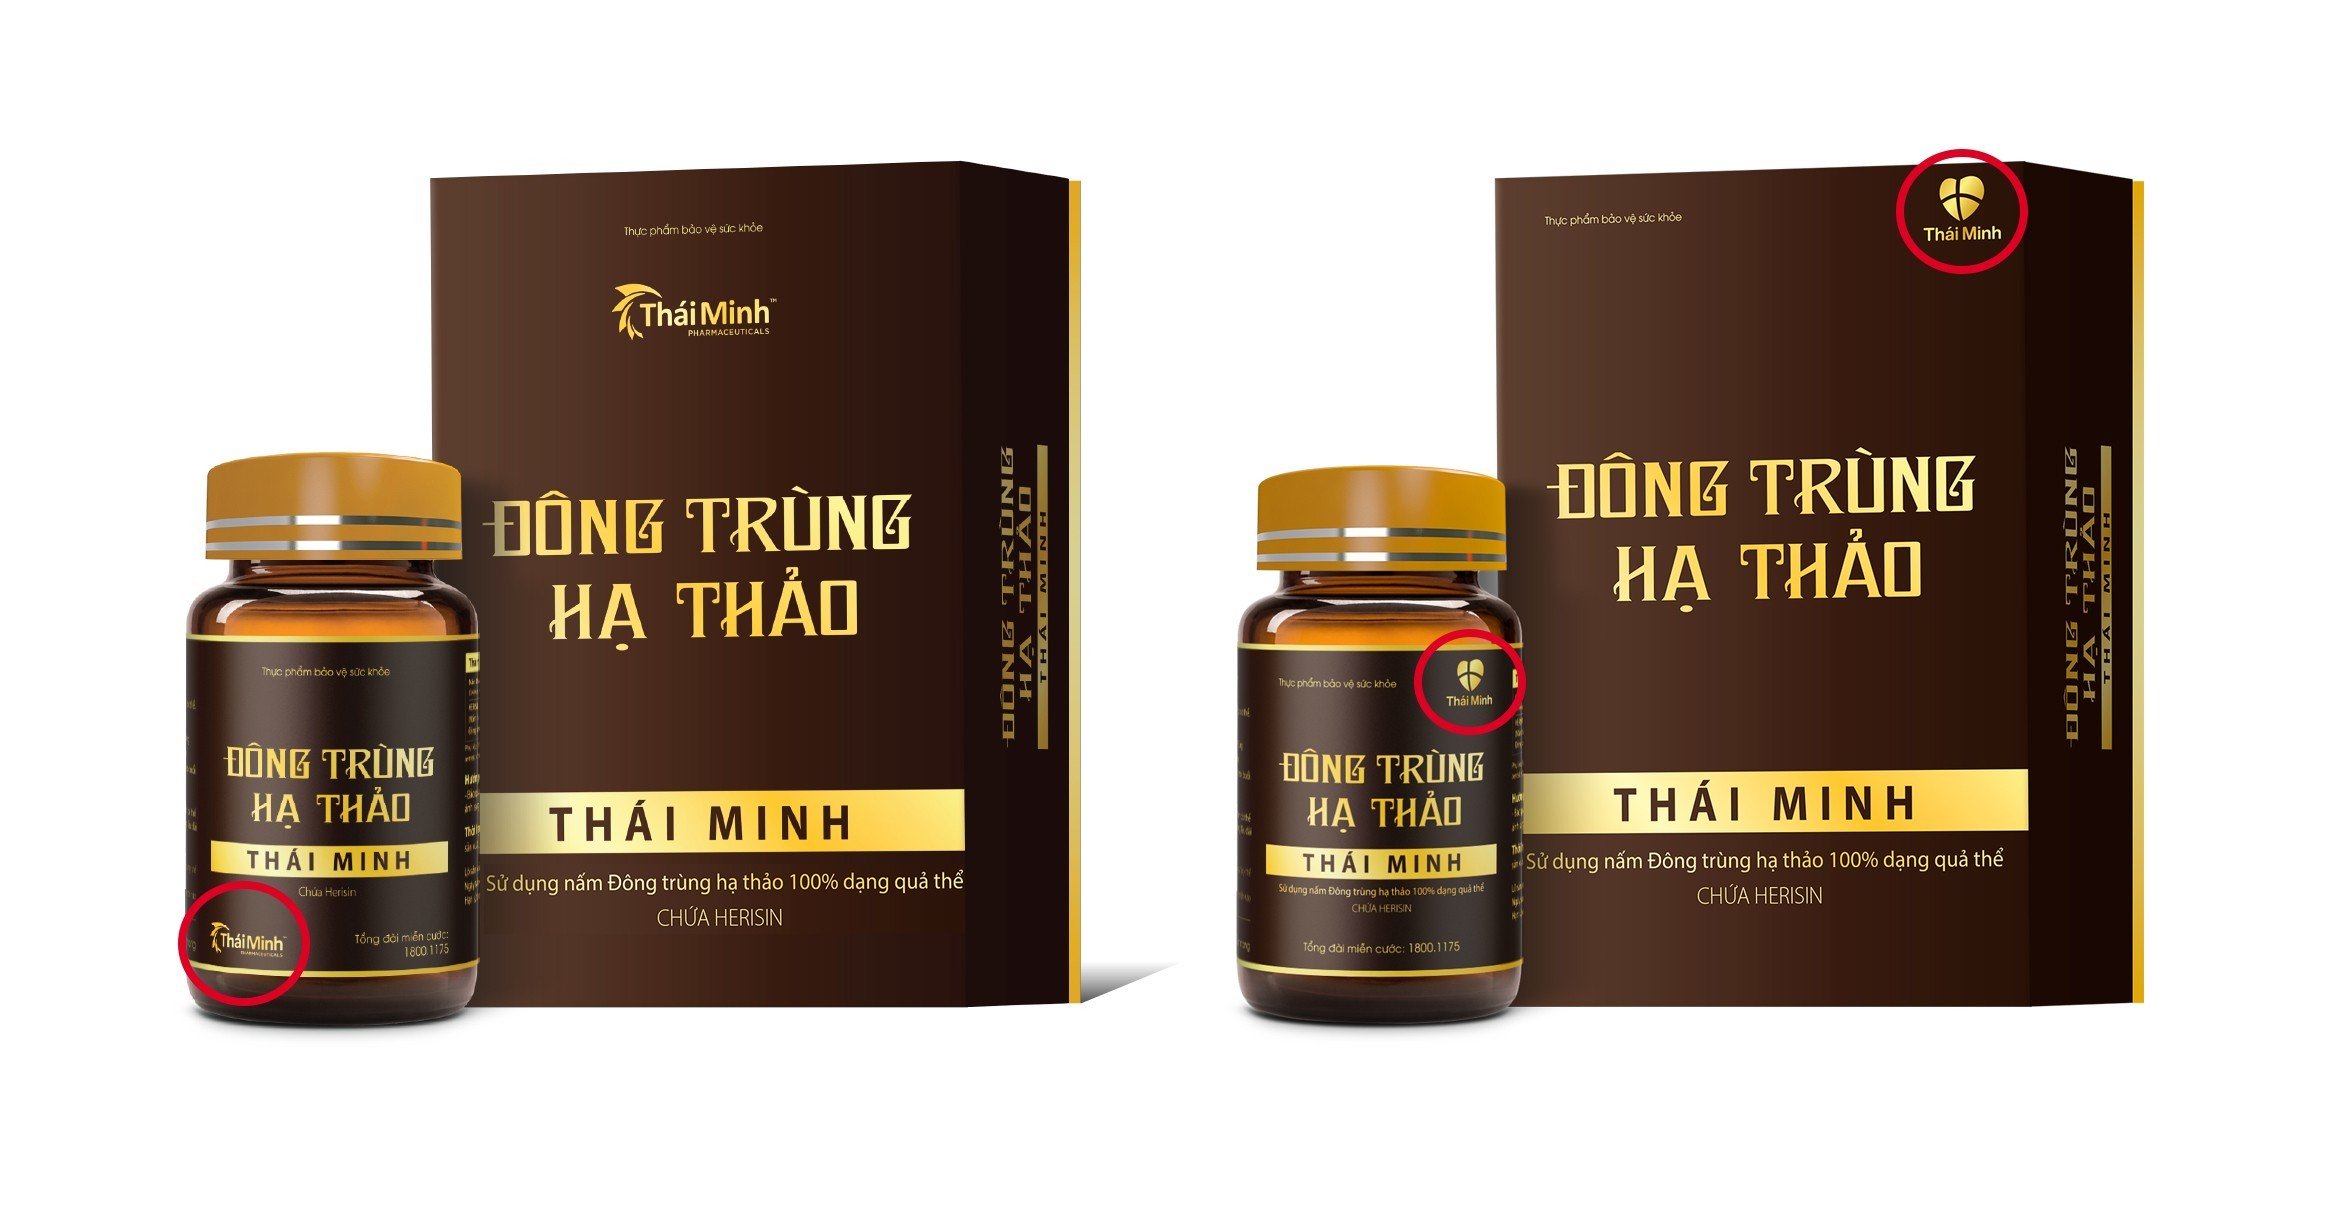 Dược phẩm Thái Minh ra mắt bộ nhận diện thương hiệu mới 2